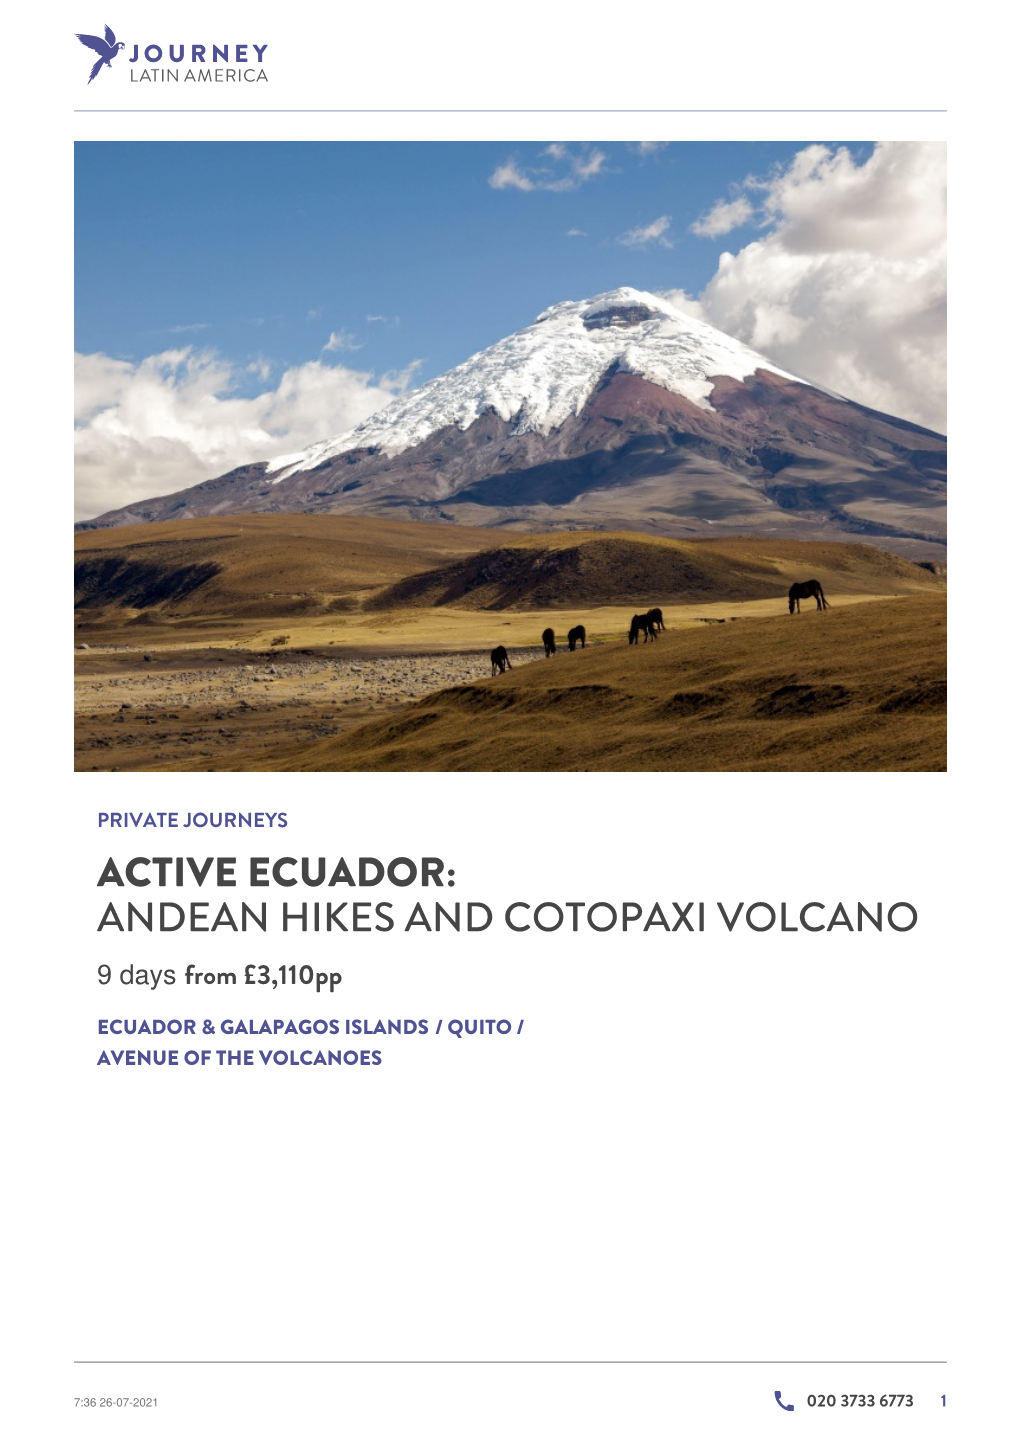 Active Ecuador: Andean Hikes and Cotopaxi Volcano